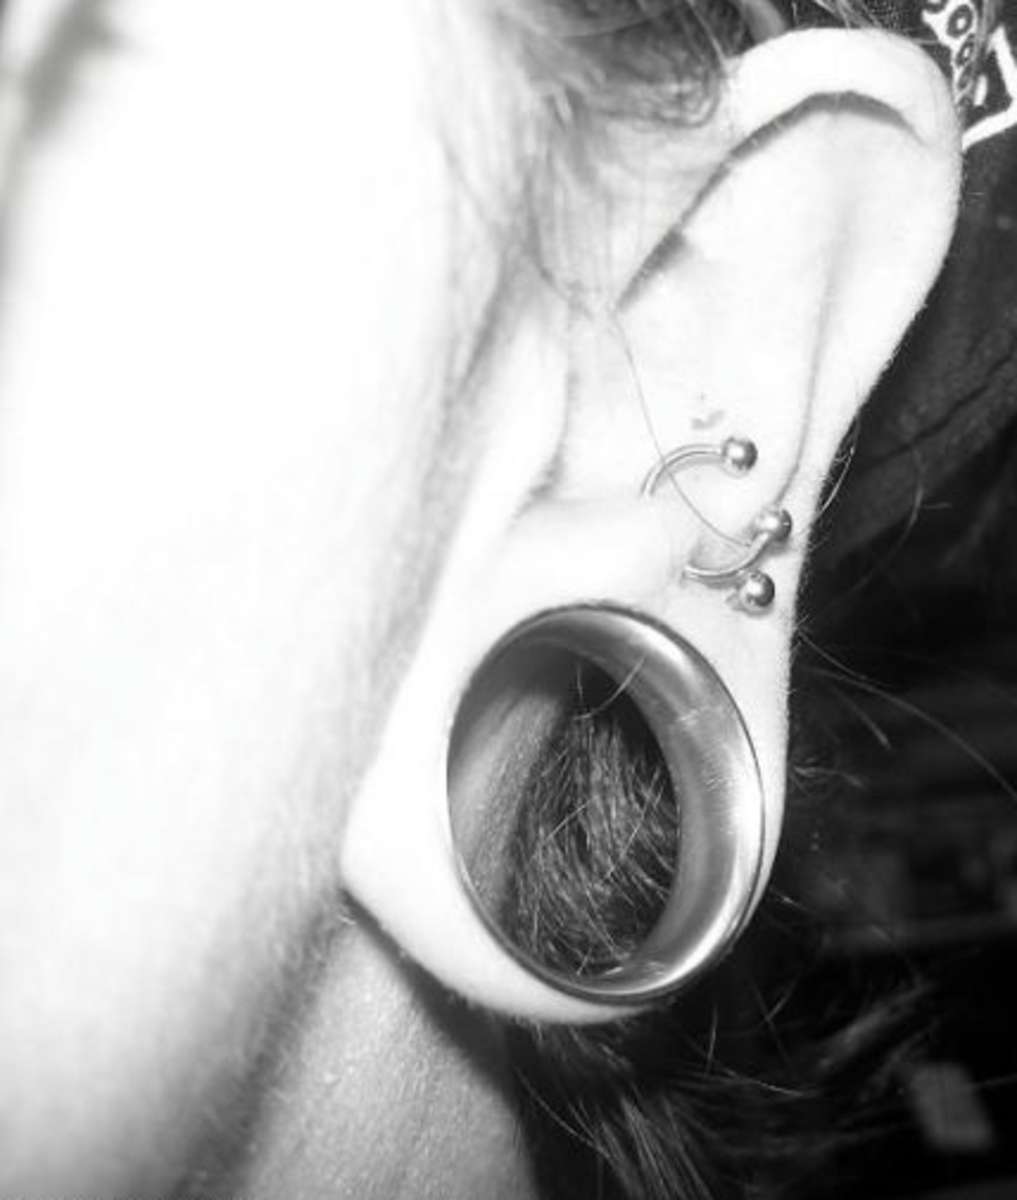 Standard earlobe piercing gauged to 1" diameter.